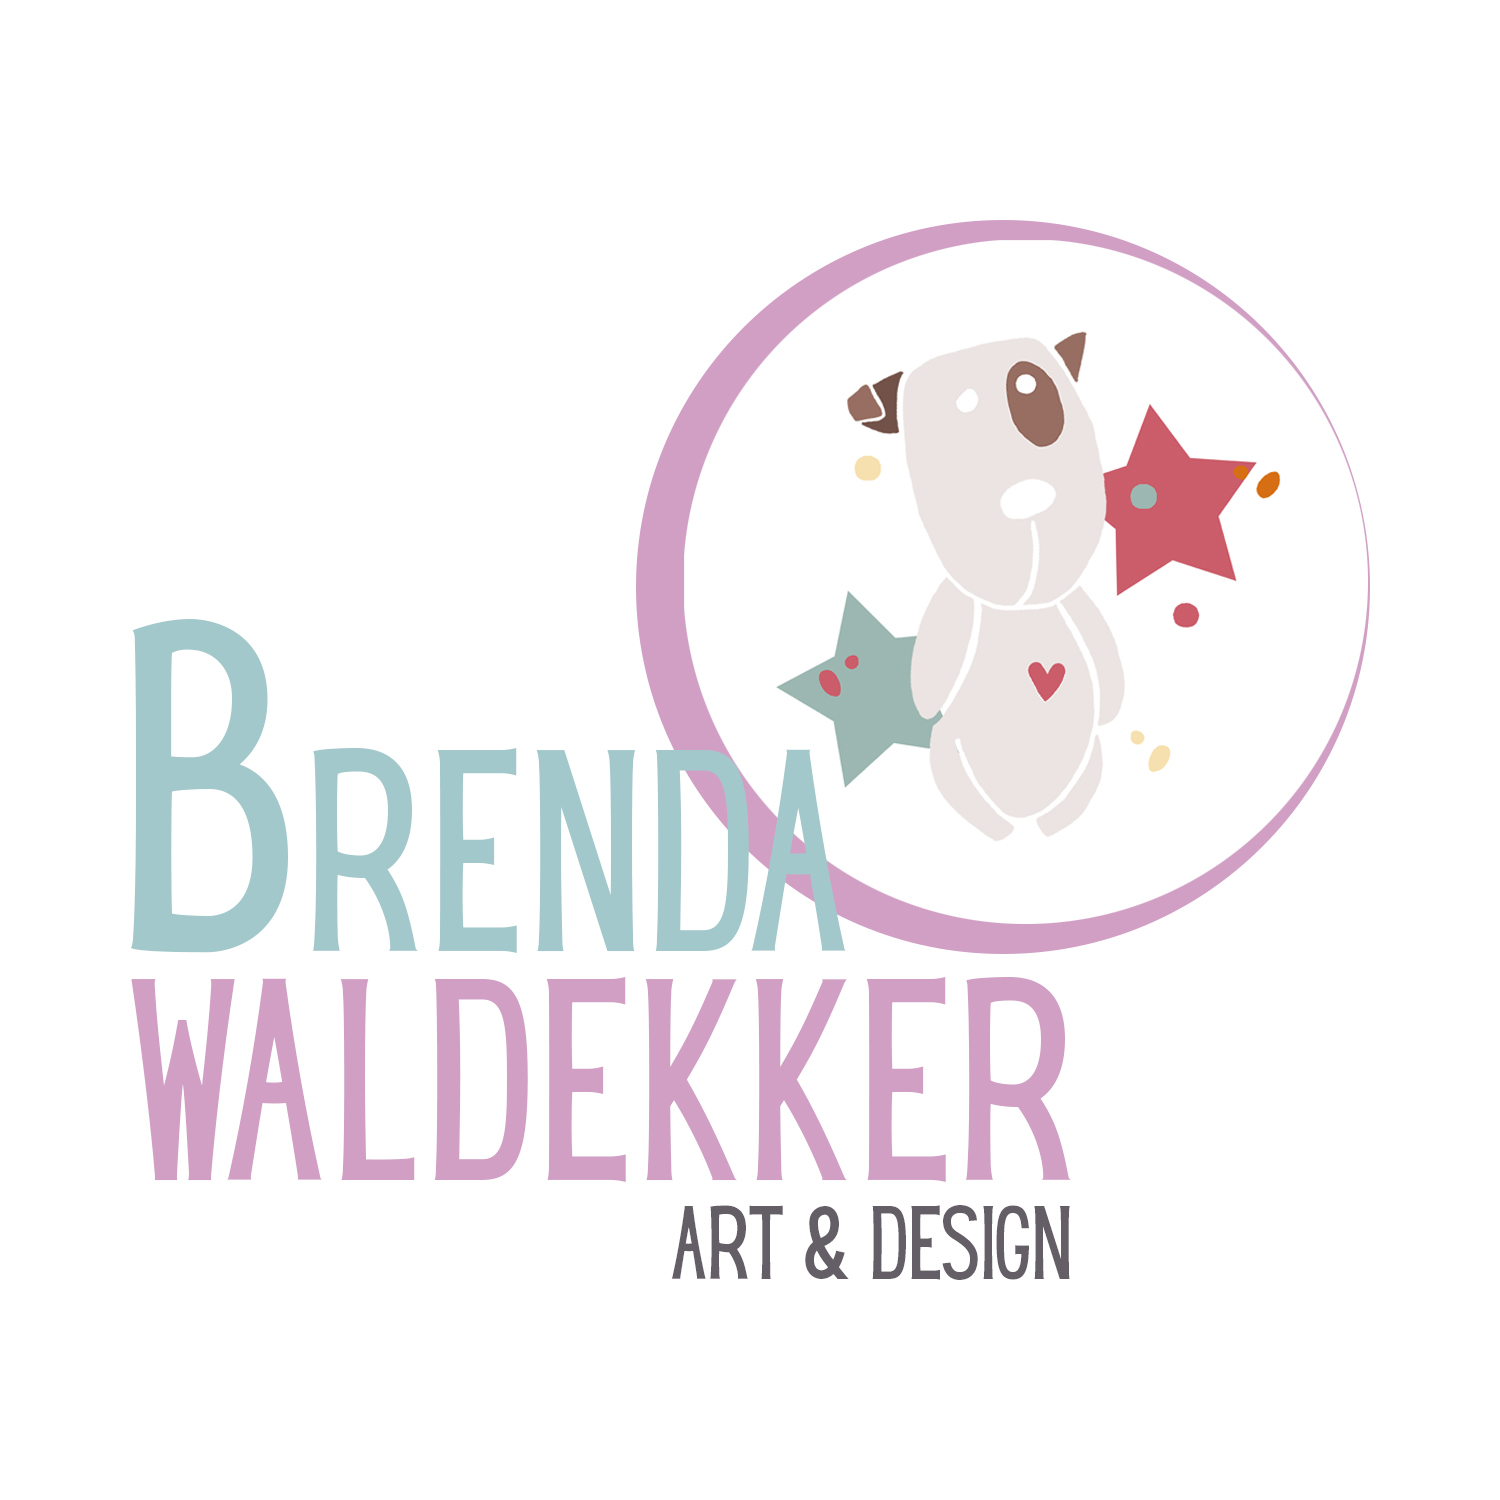 Brenda Waldekker Art & Design